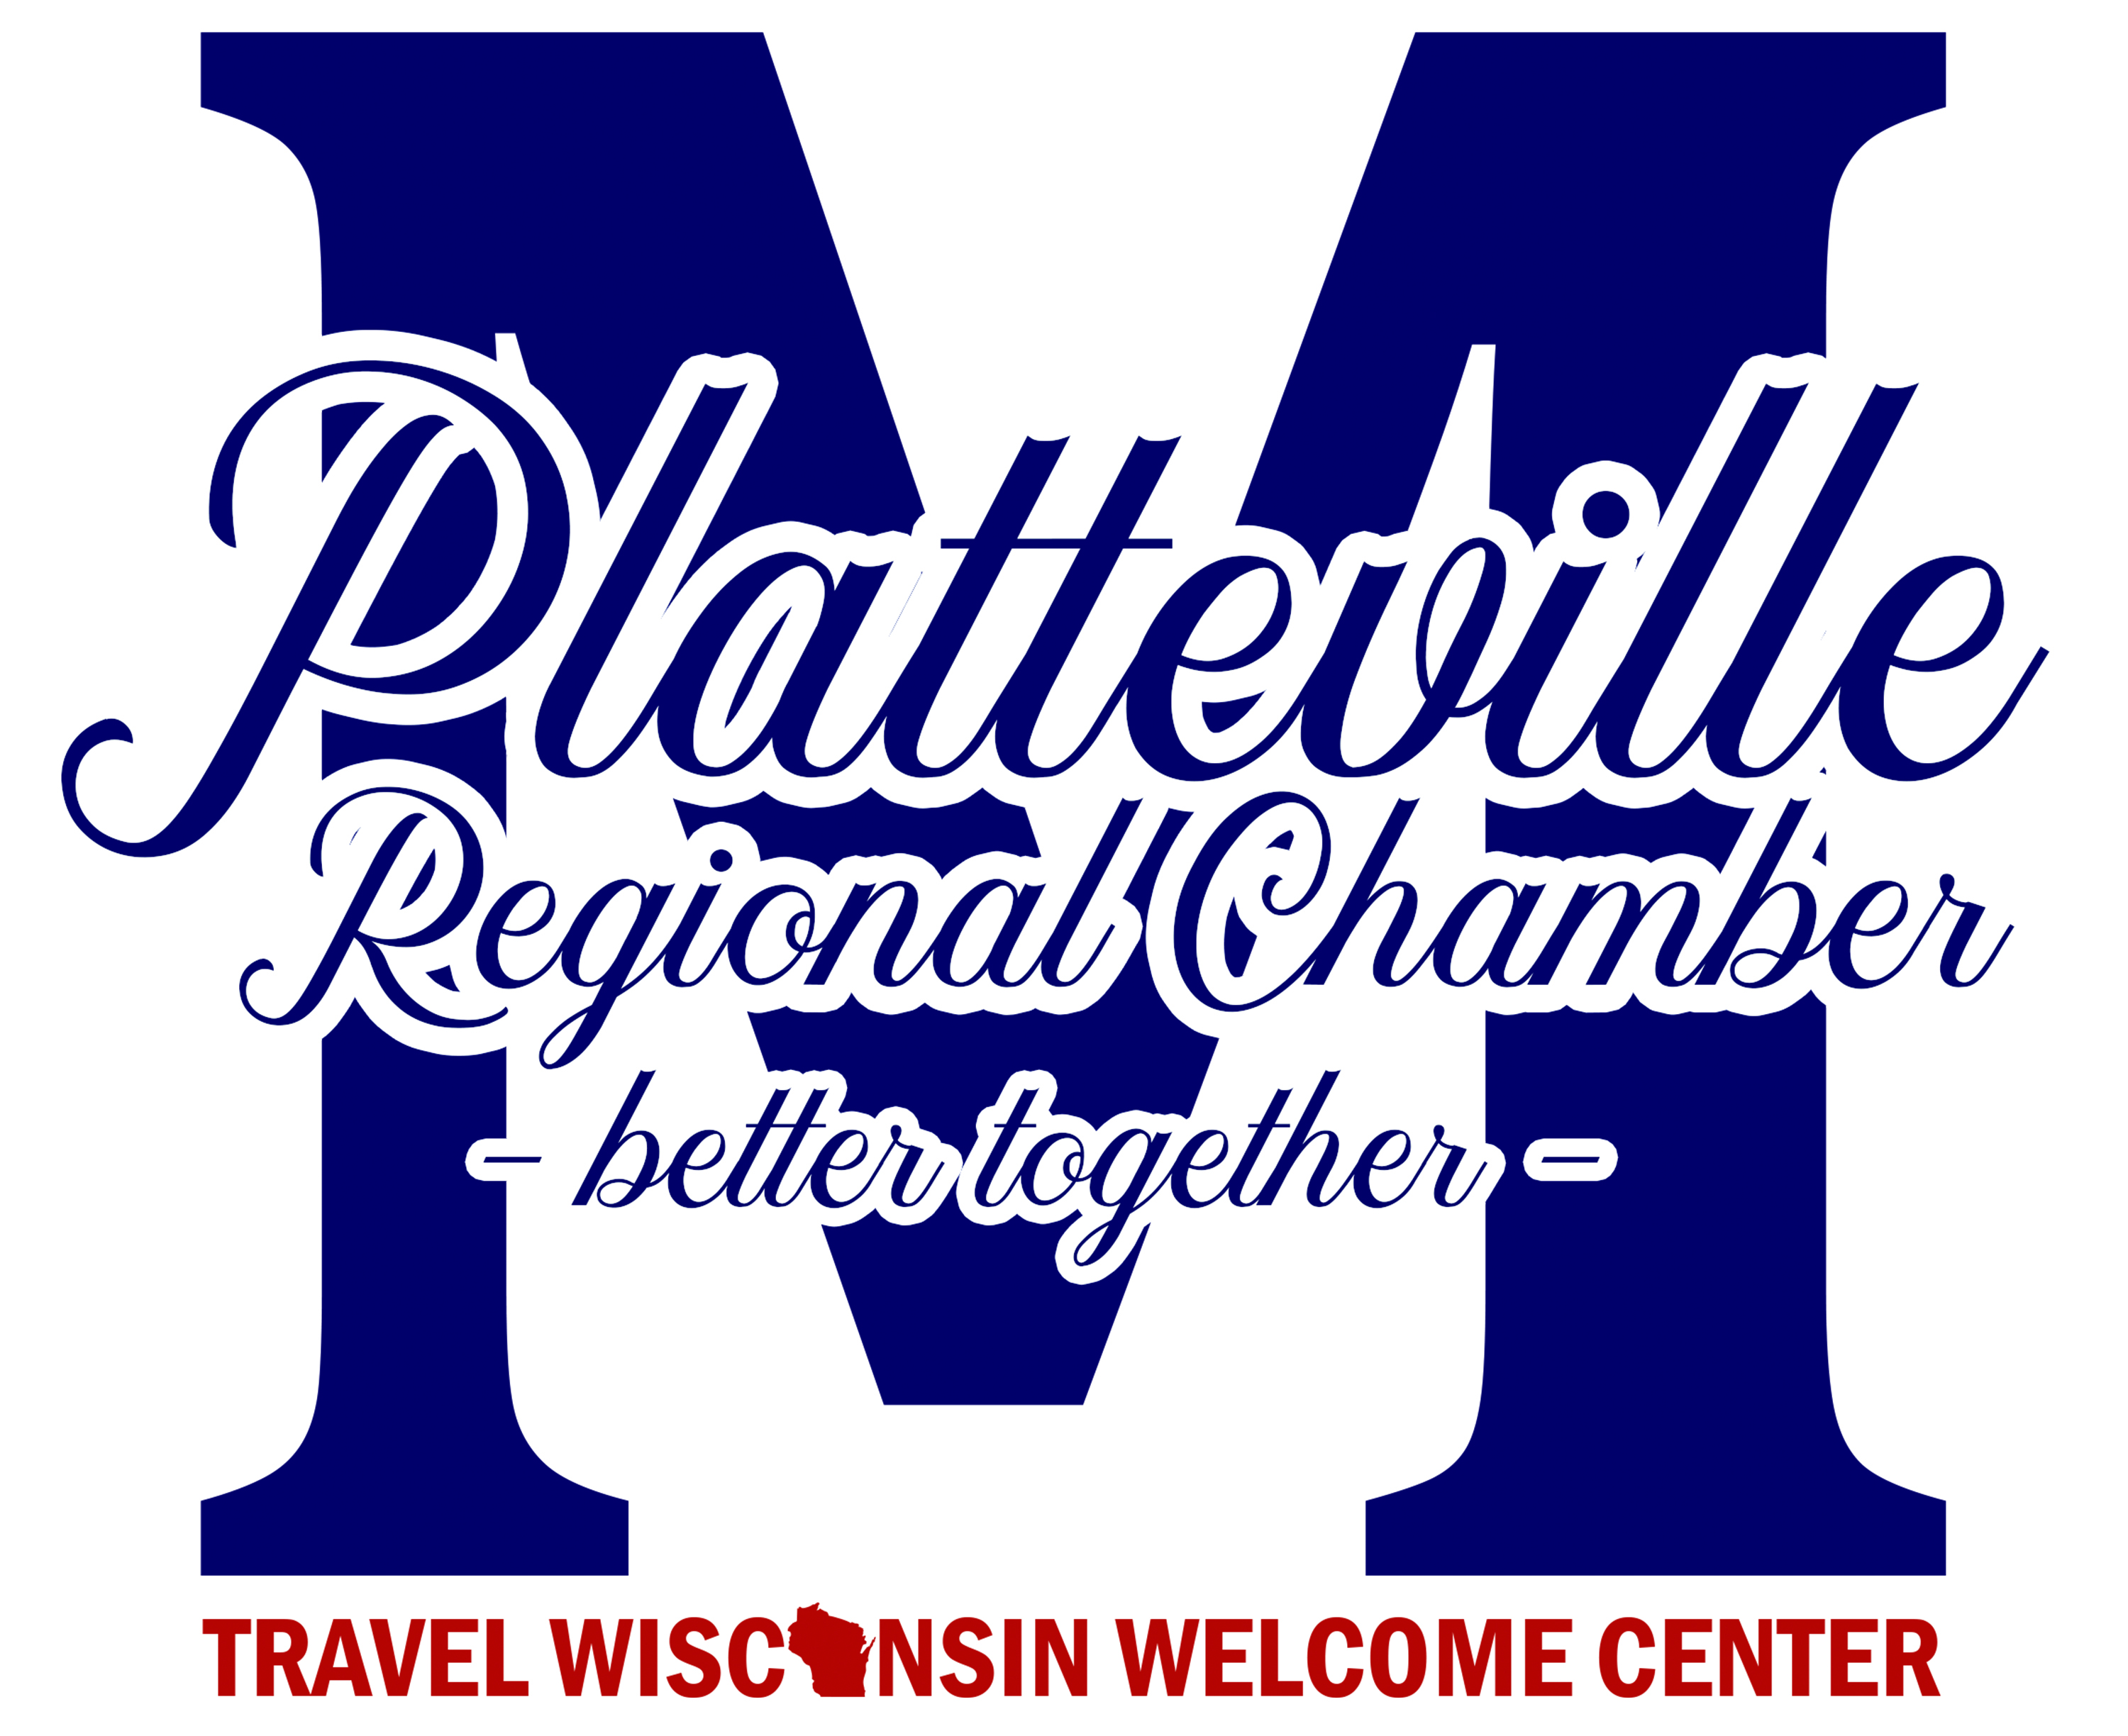 Platteville Regional Chamber